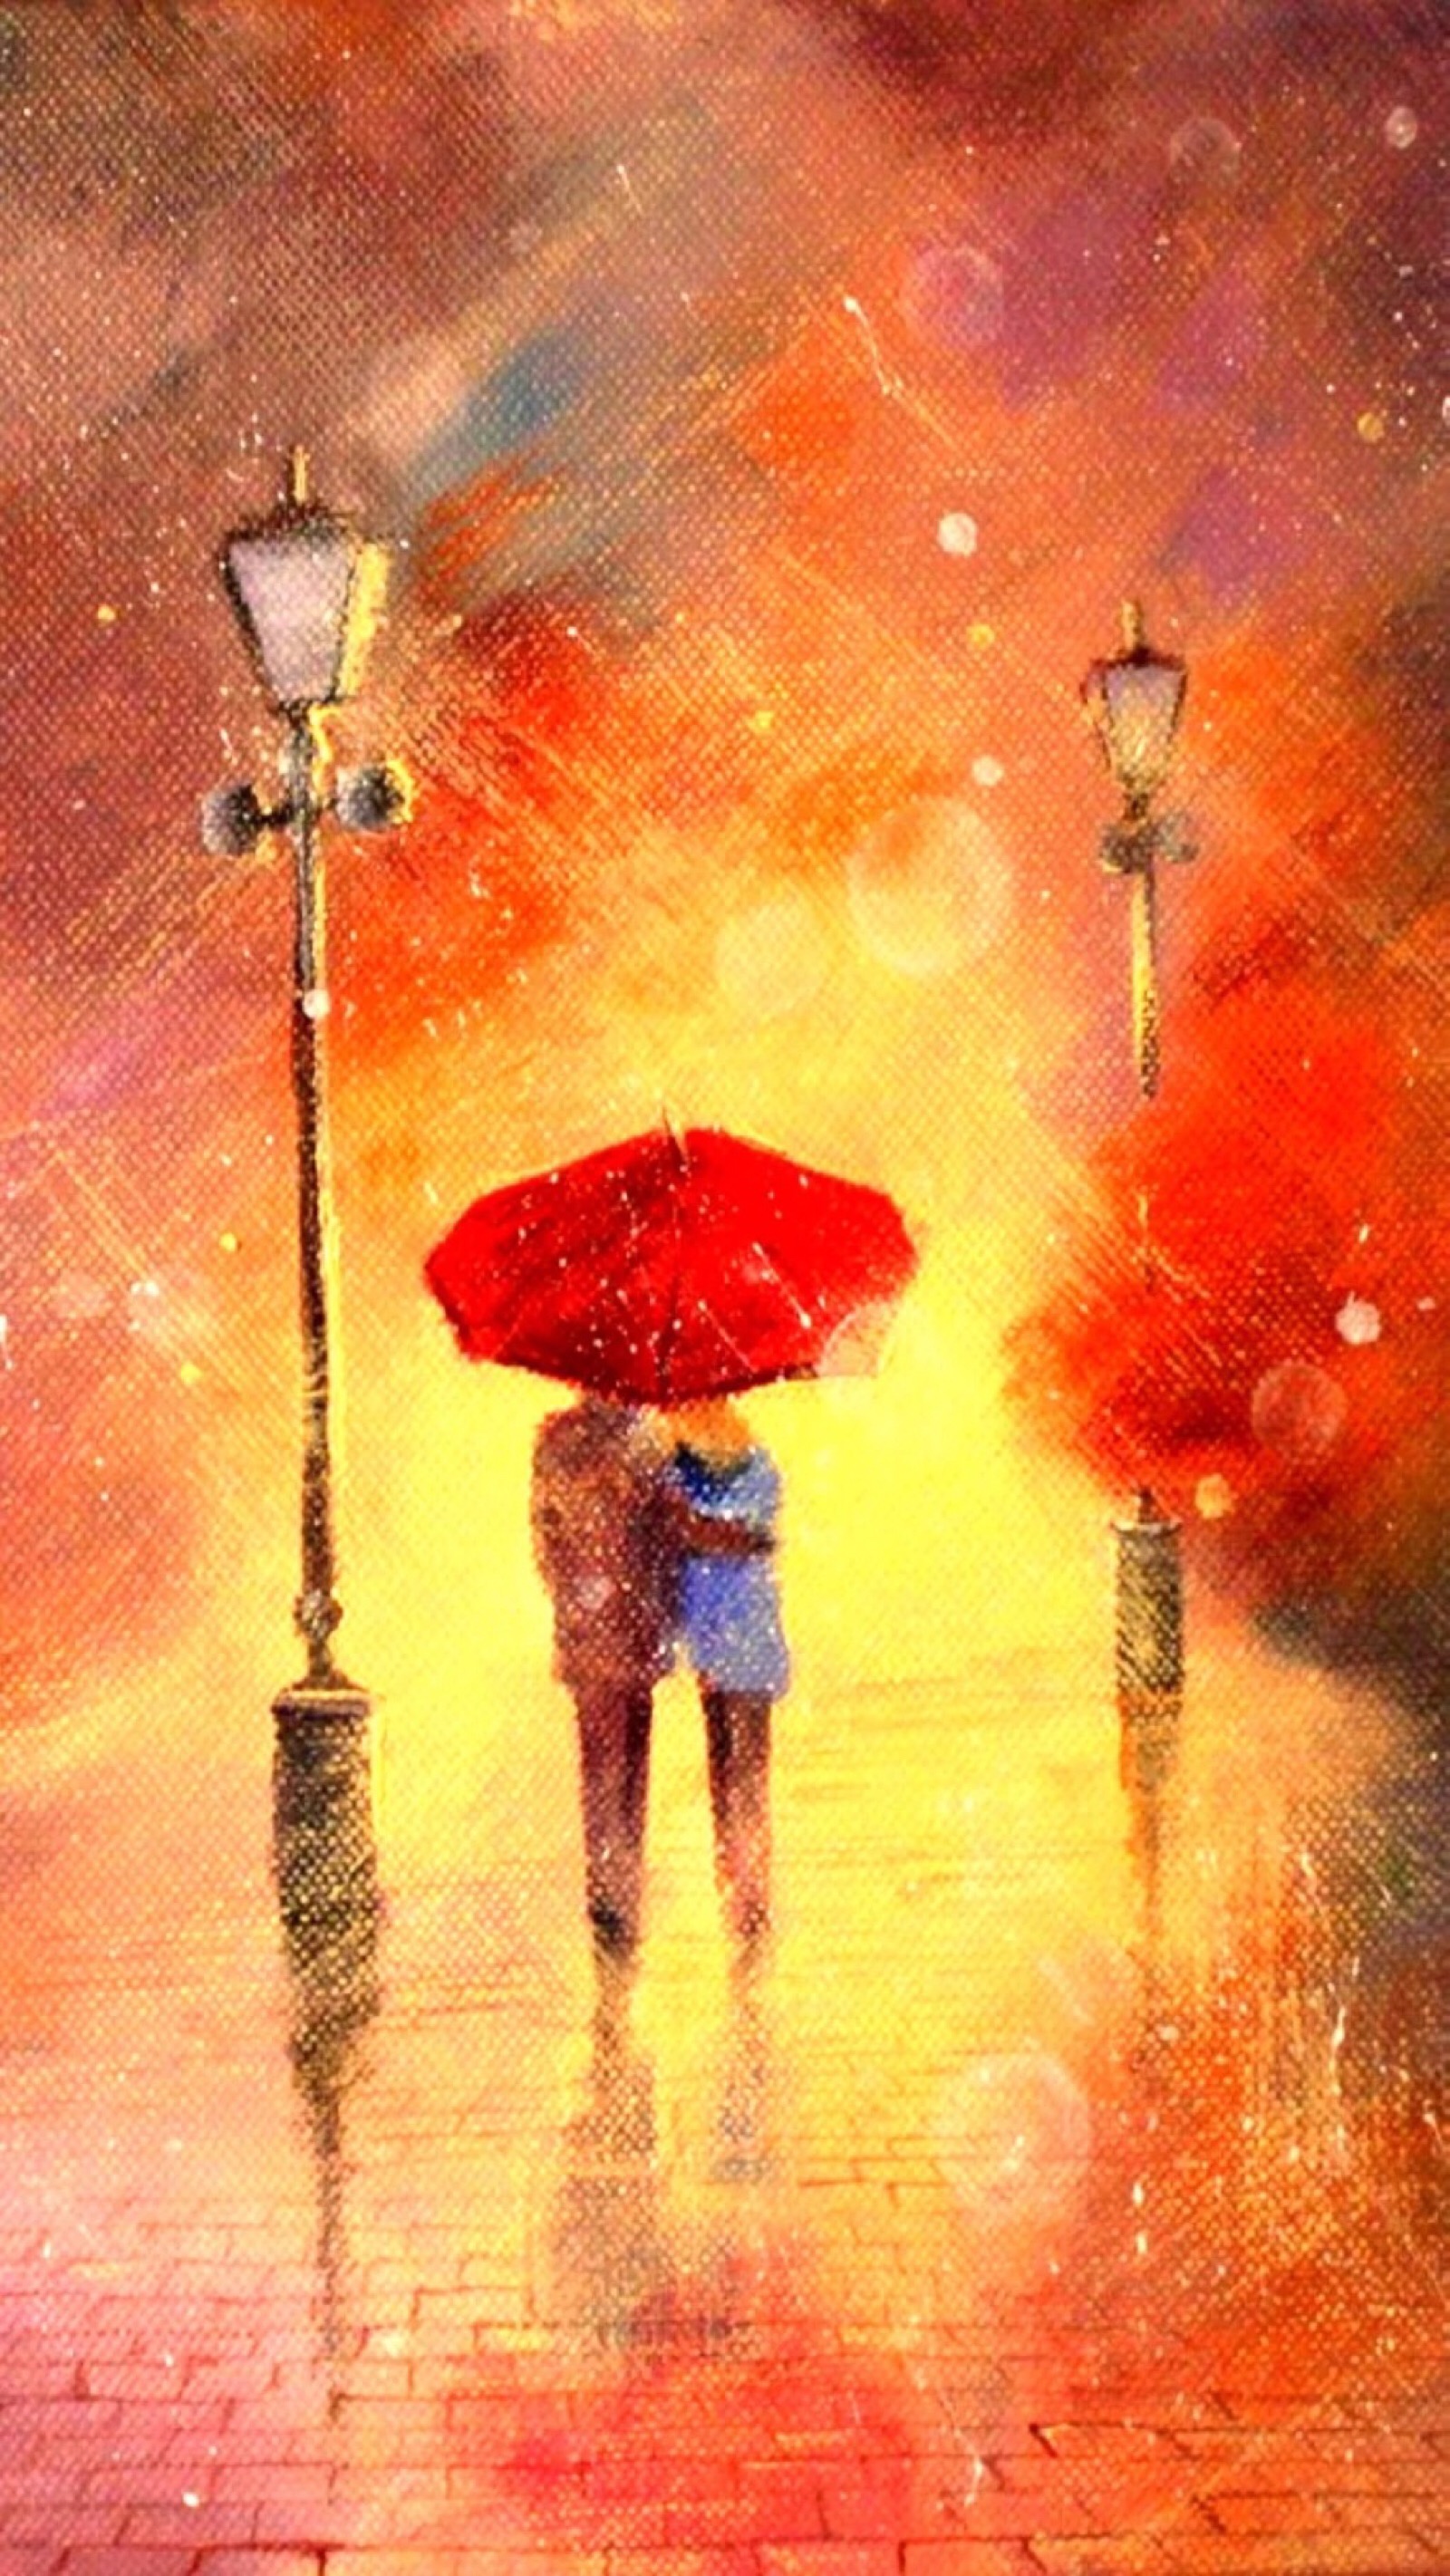 一个人撑伞在雨中淋雨_唯美意境伤感图片 - 伤感说说吧